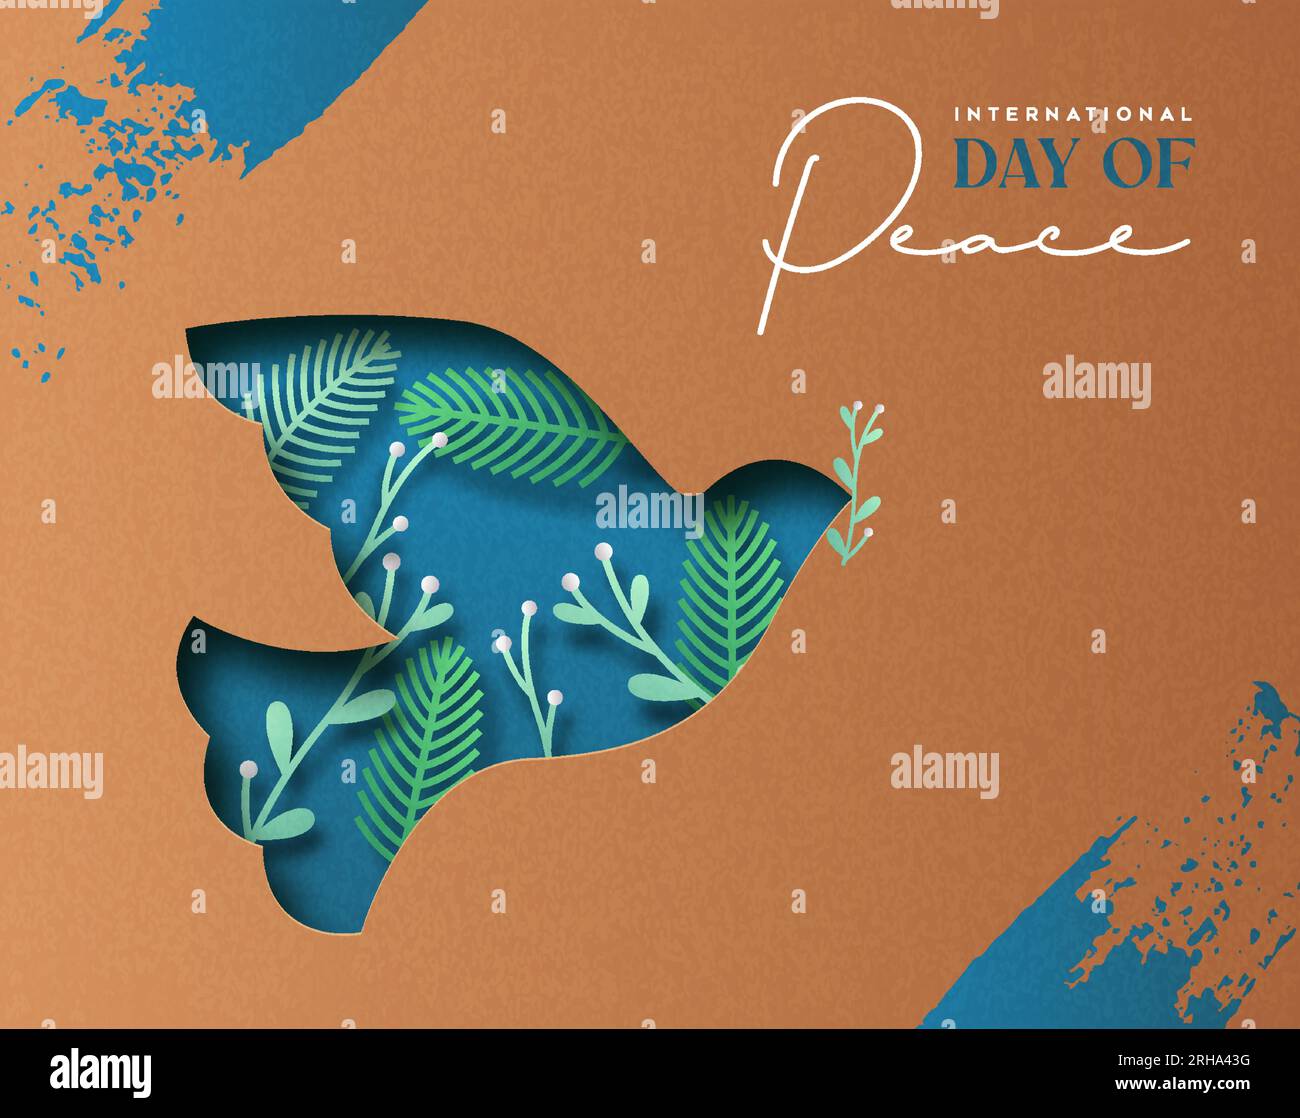 Illustrazione della carta vettoriale della giornata internazionale della pace di un animale da colomba tagliato in carta 3d con ritaglio decoro di foglie di pino all'interno e ramo di ulivo. GR Illustrazione Vettoriale